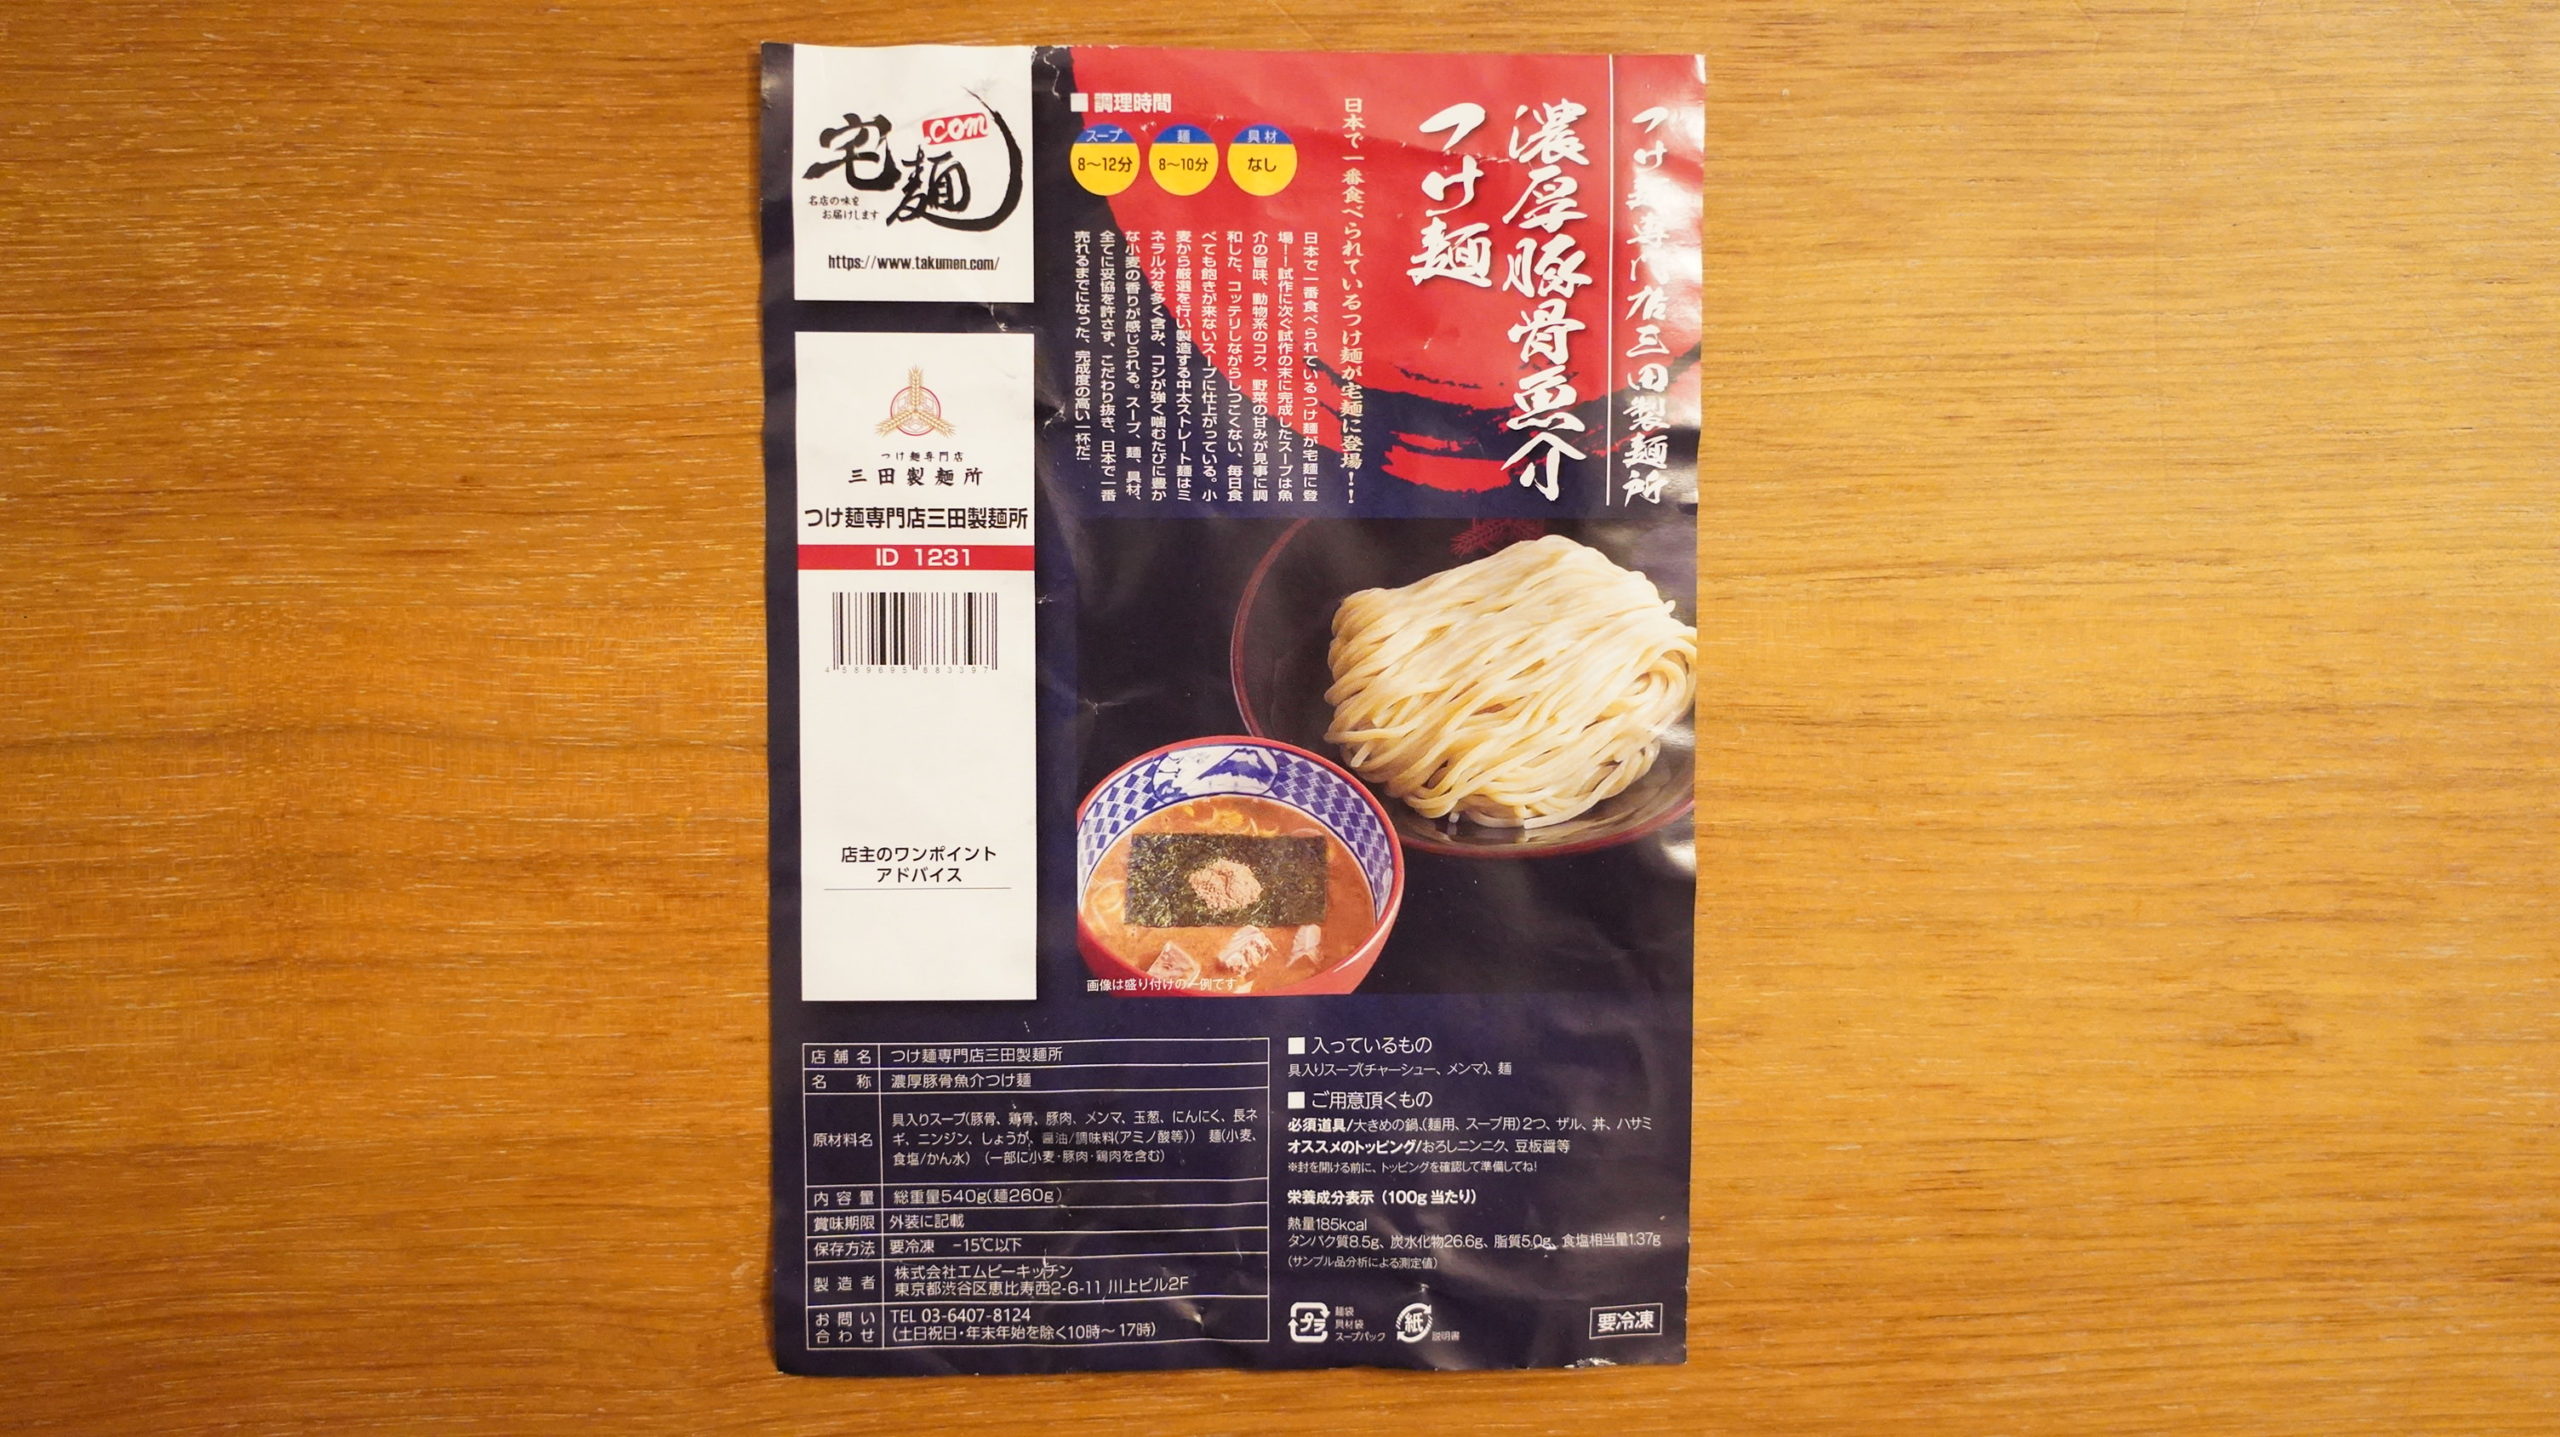 オンライン通販で注文した三田製麺所の「冷凍つけ麺」のパンフレットの写真